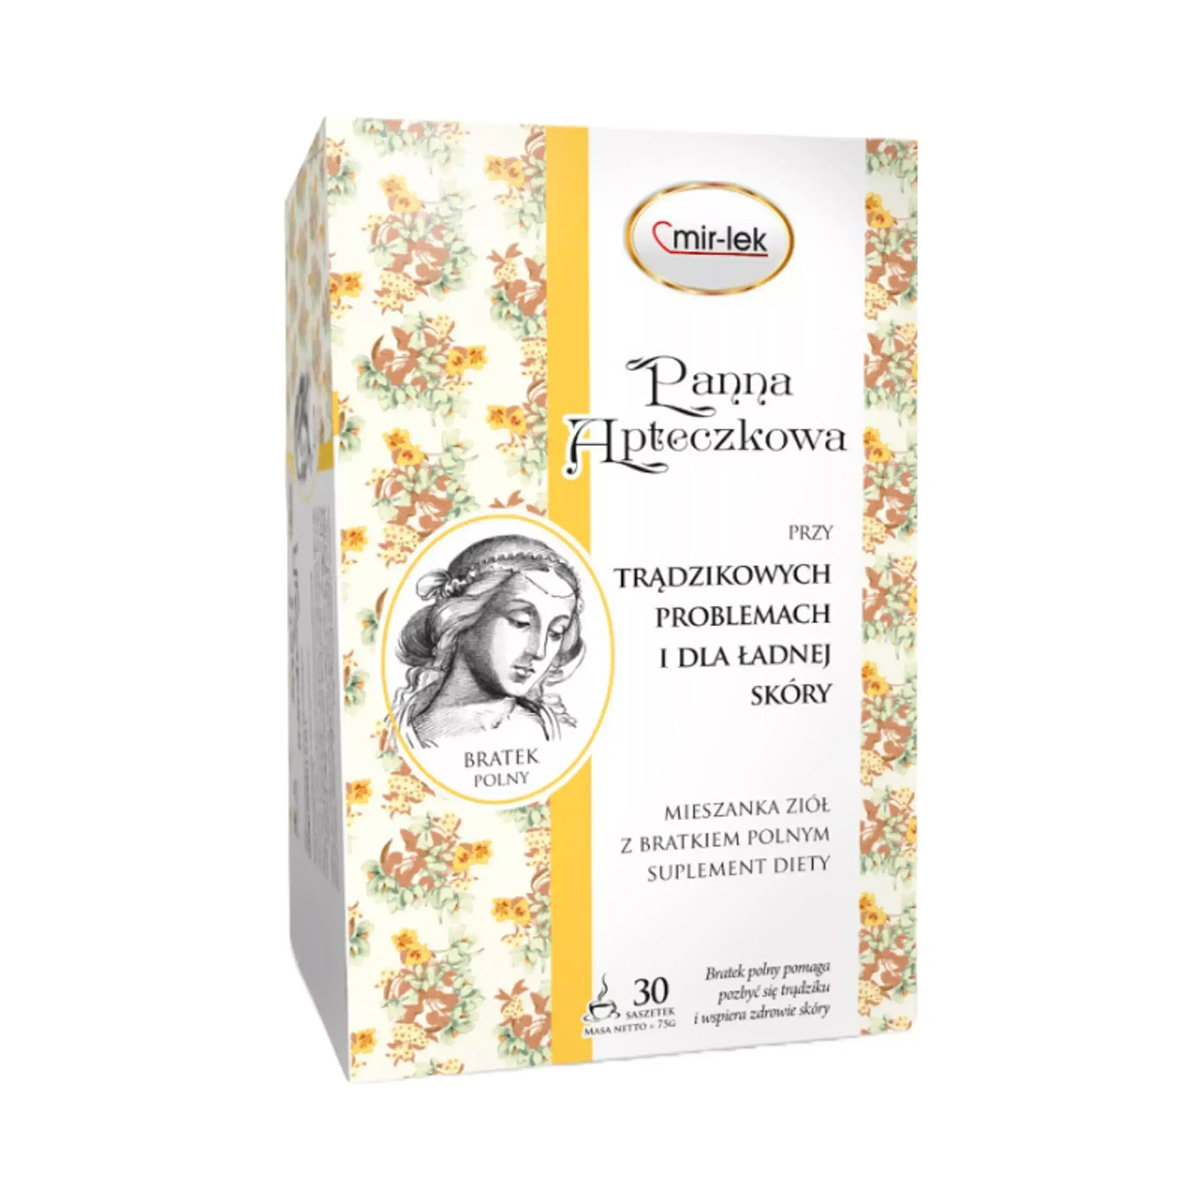 Lek Mir Panna Apteczkowa - mieszanka ziół na trądzik (30 saszetek) Mir